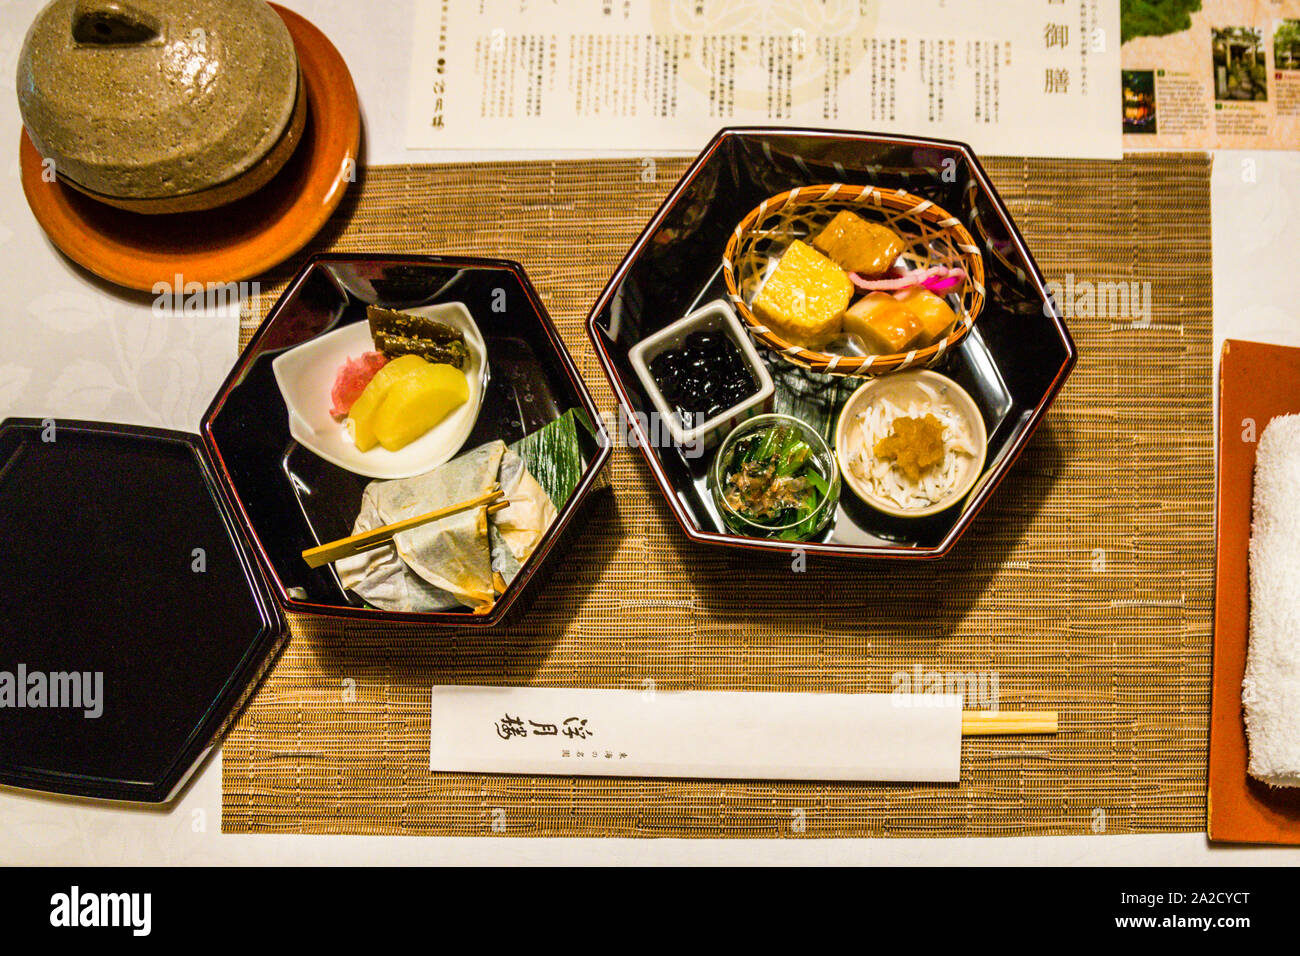 Dîner japonais dans la Maison du dernier shogun, Tokugawa Yoshinobu, à Shizuoka, Japon. Déjeuner au Fugetsuro avec les plats préférés du dernier shogun : œufs, haricots noirs et riz aux flocons de bonite Banque D'Images